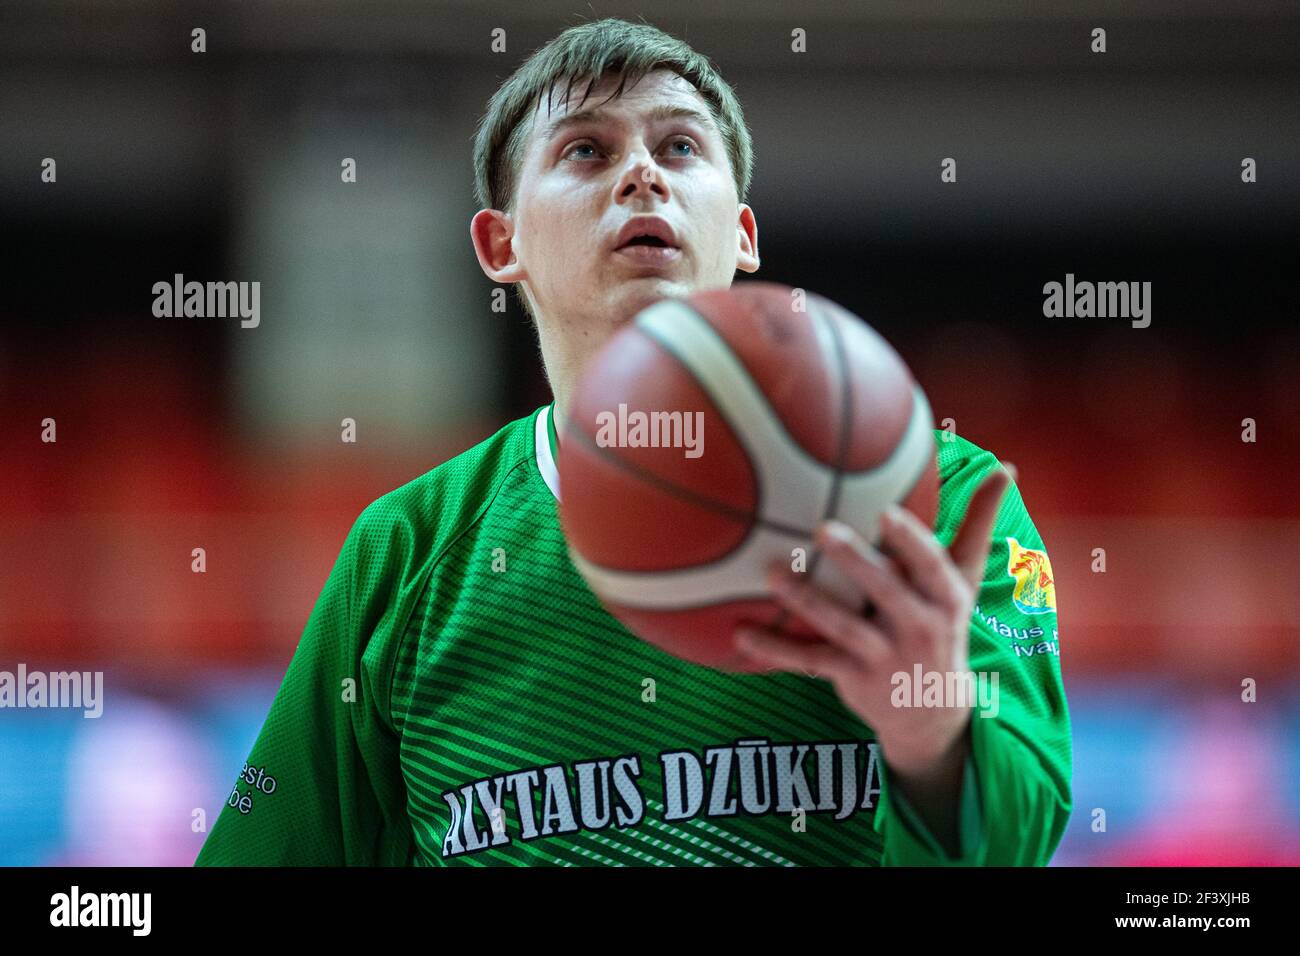 2021-03-17. Matas Jucikas - Basketball player lituano, BC Dzukija, Alytus Foto Stock